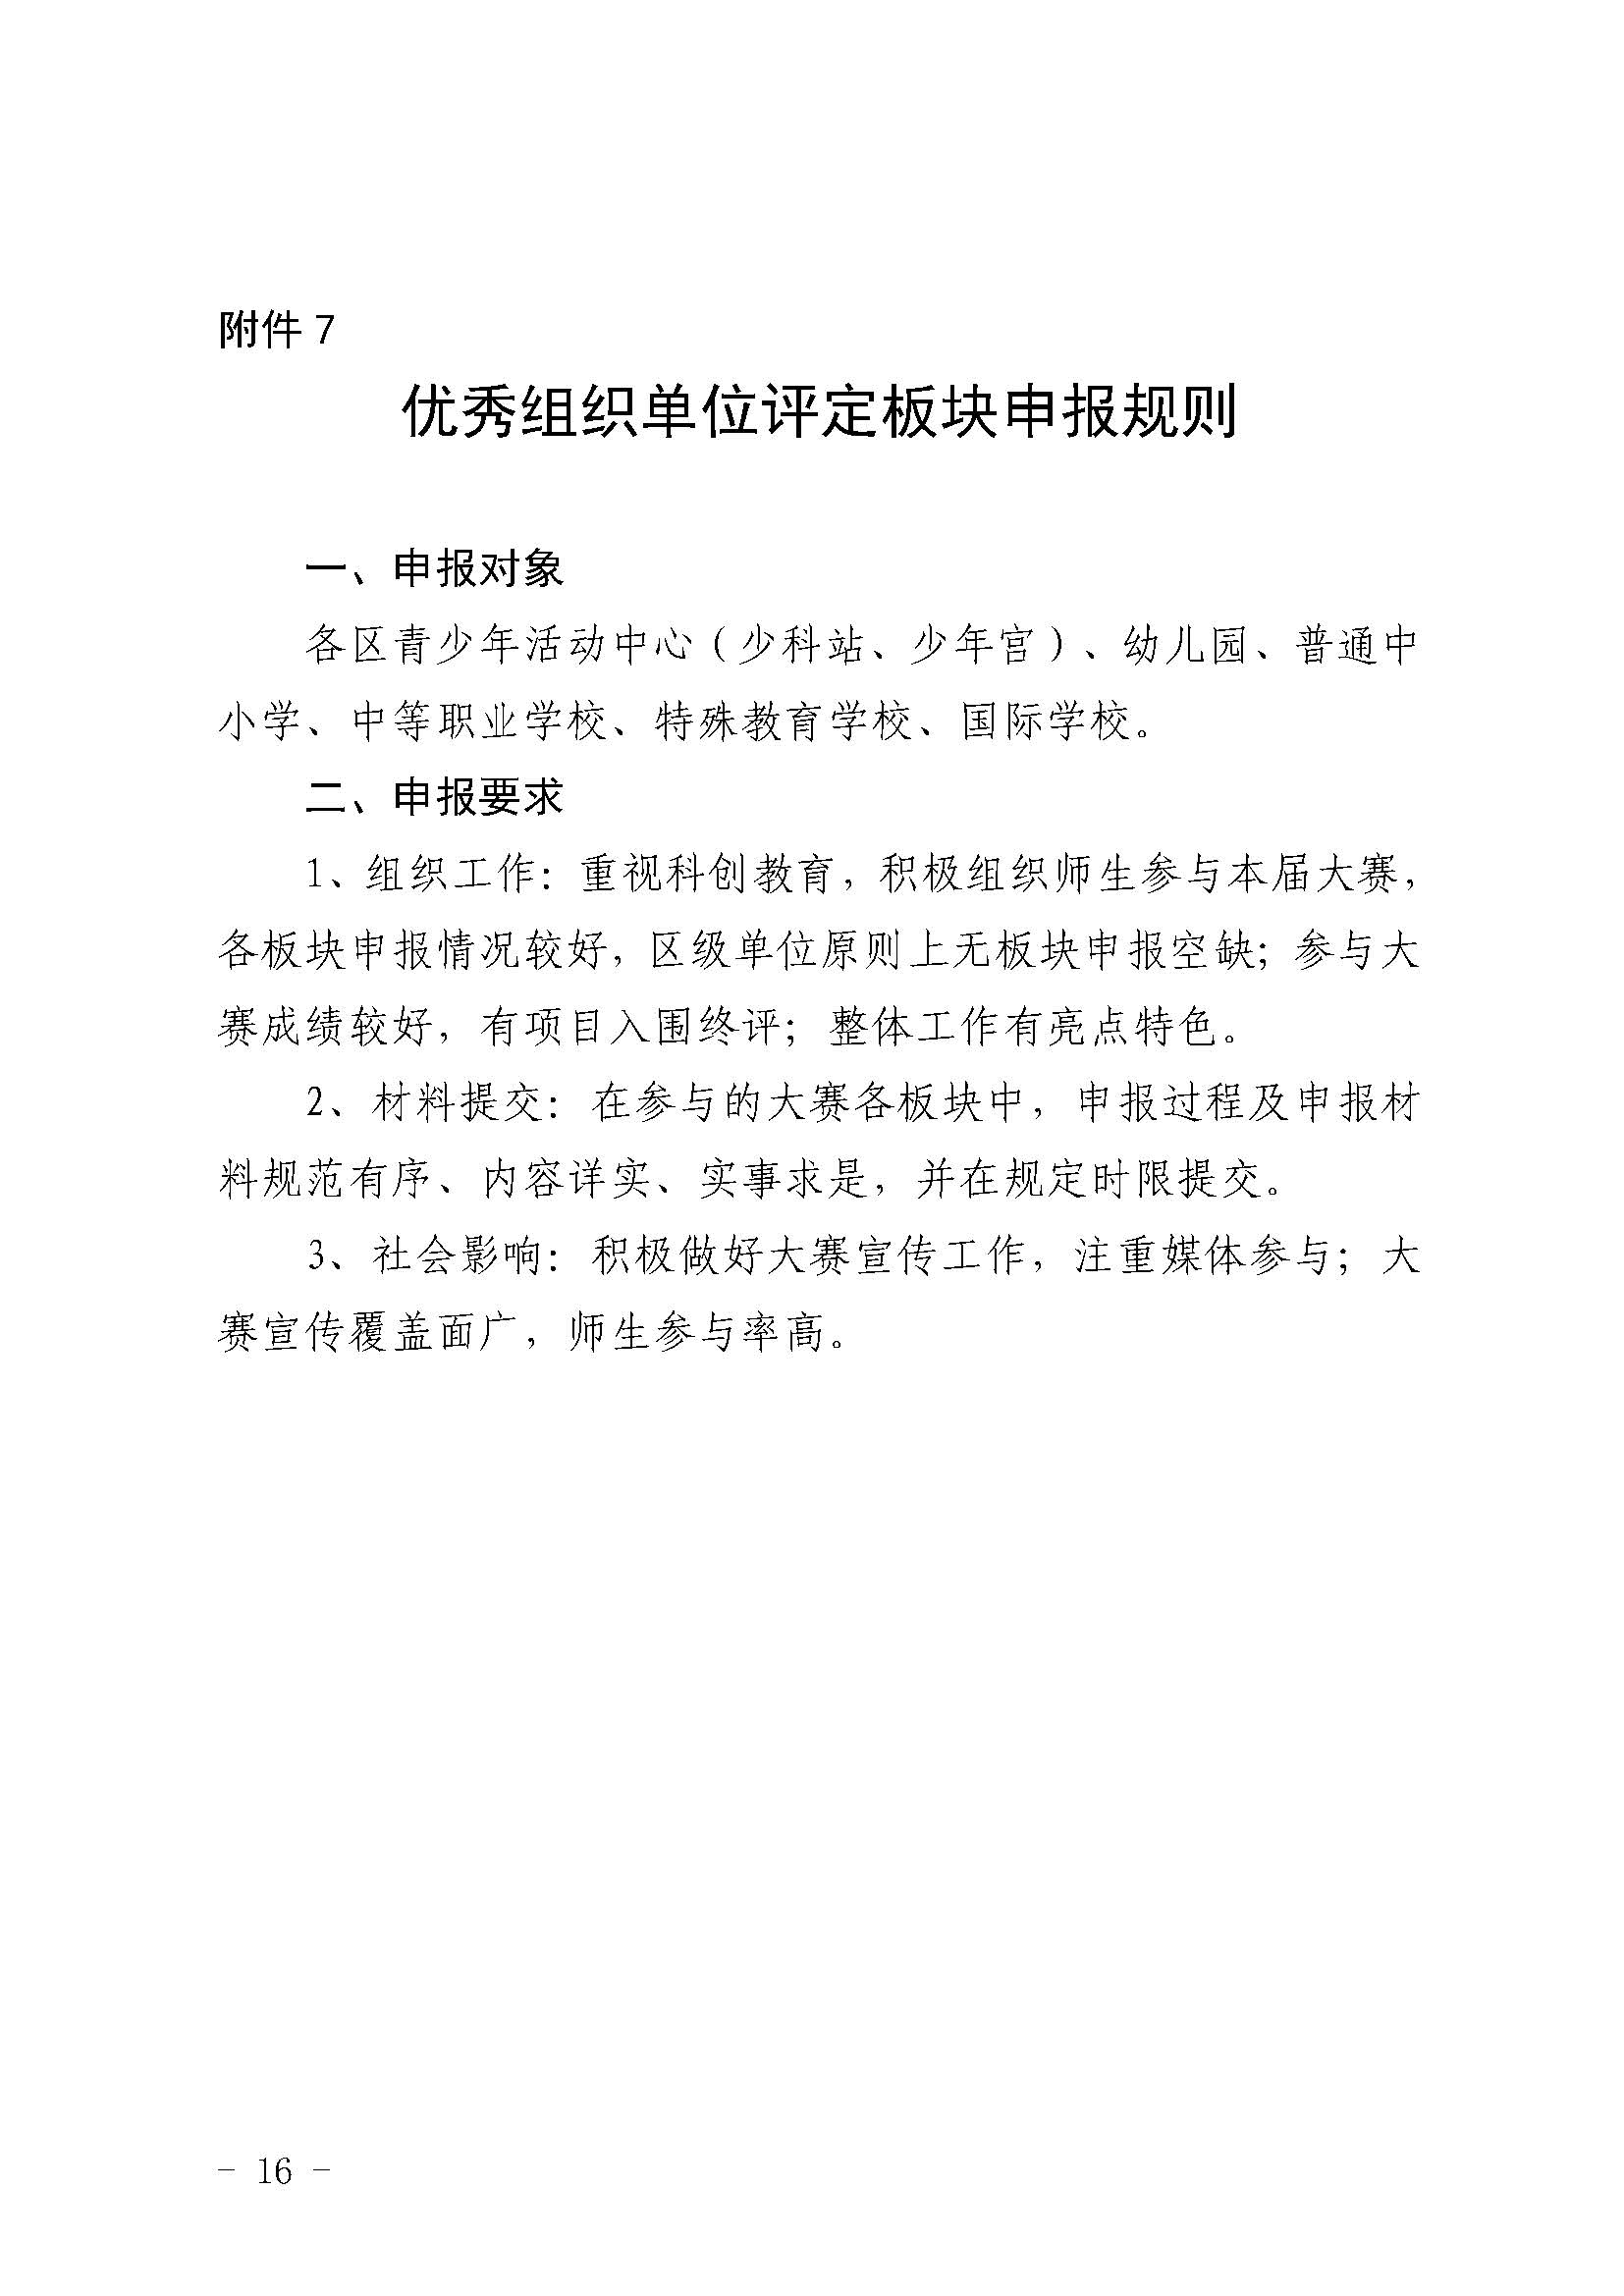 第39届上海市青少年科技创新大赛举办通知V4.3_页面_16.jpg